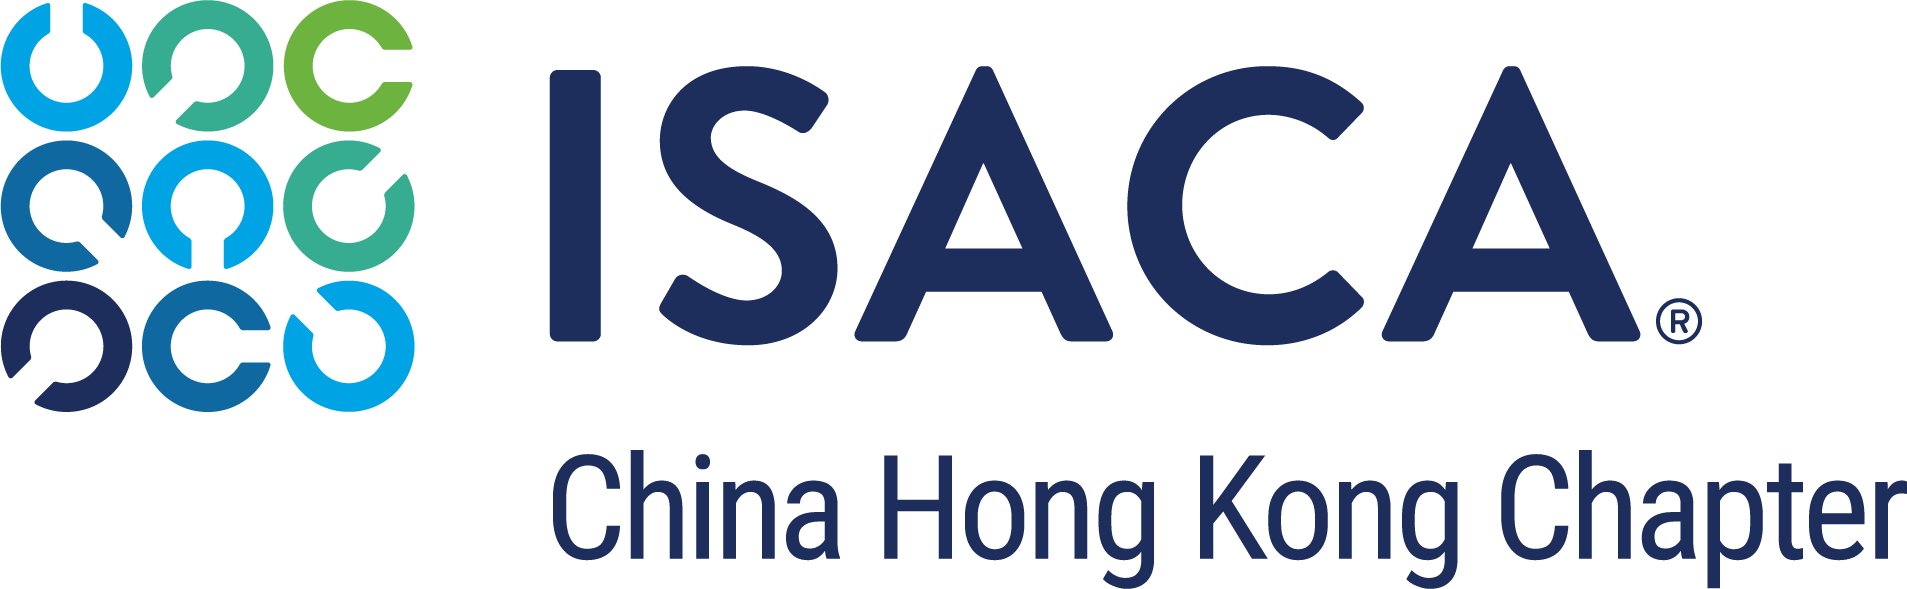 ISACA_logo_ChinaHongKong_RGB